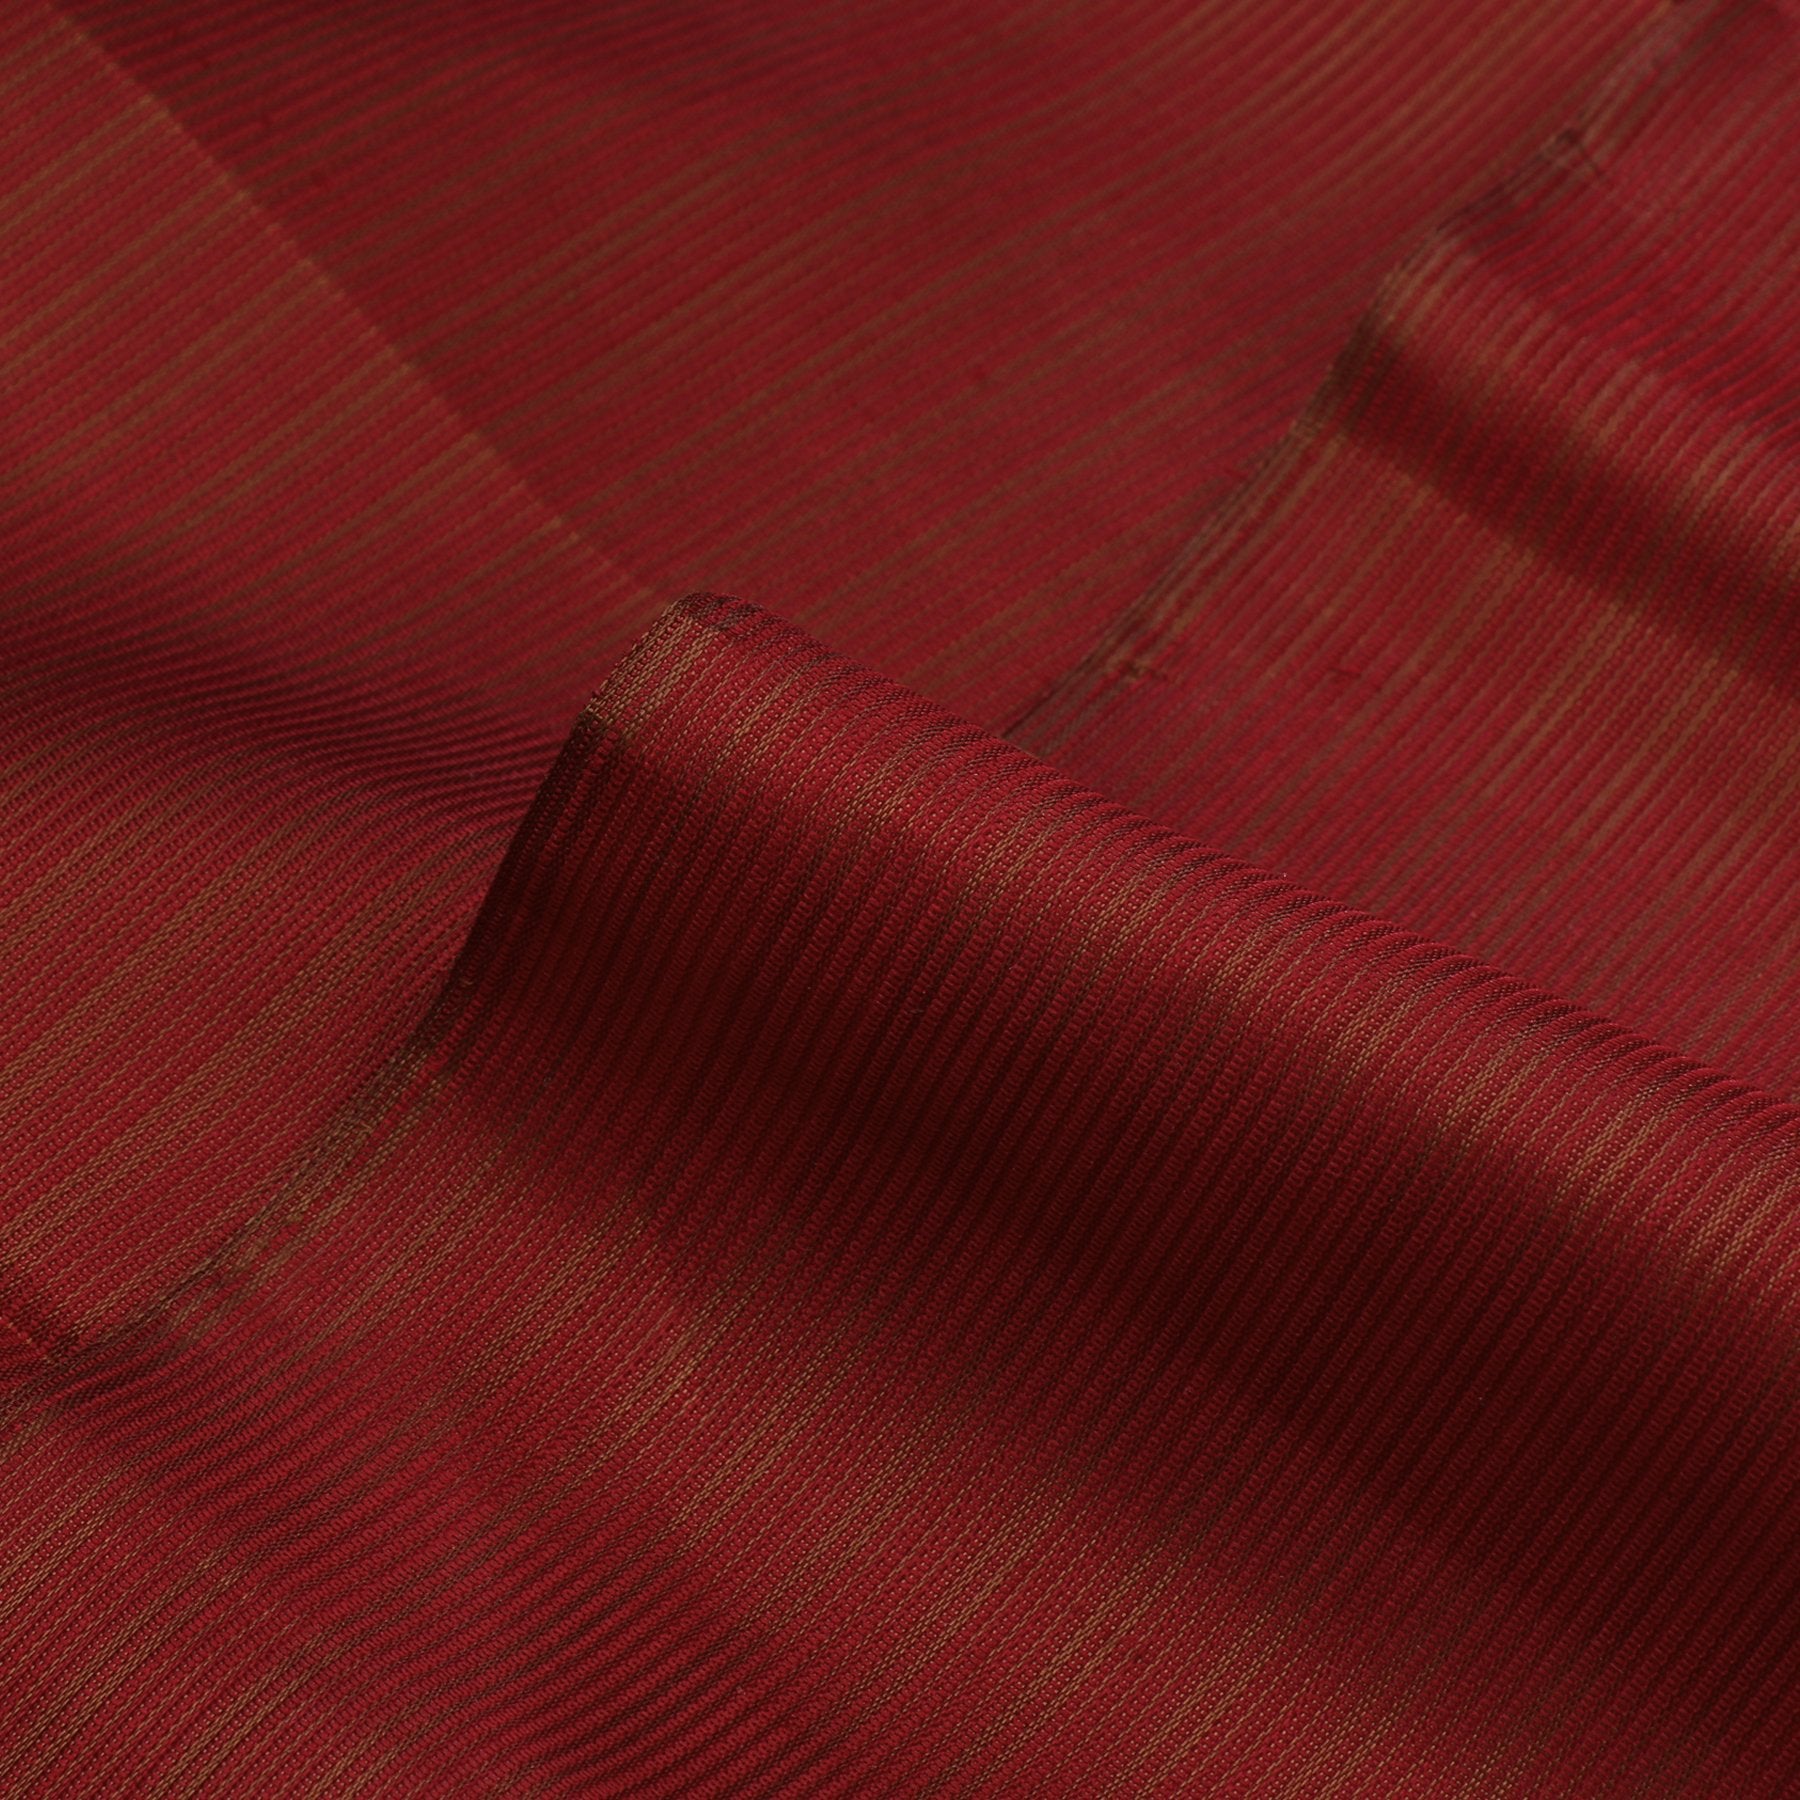 Kanakavalli Kanjivaram Silk Fabric Length 110-27-110274 - Profile View